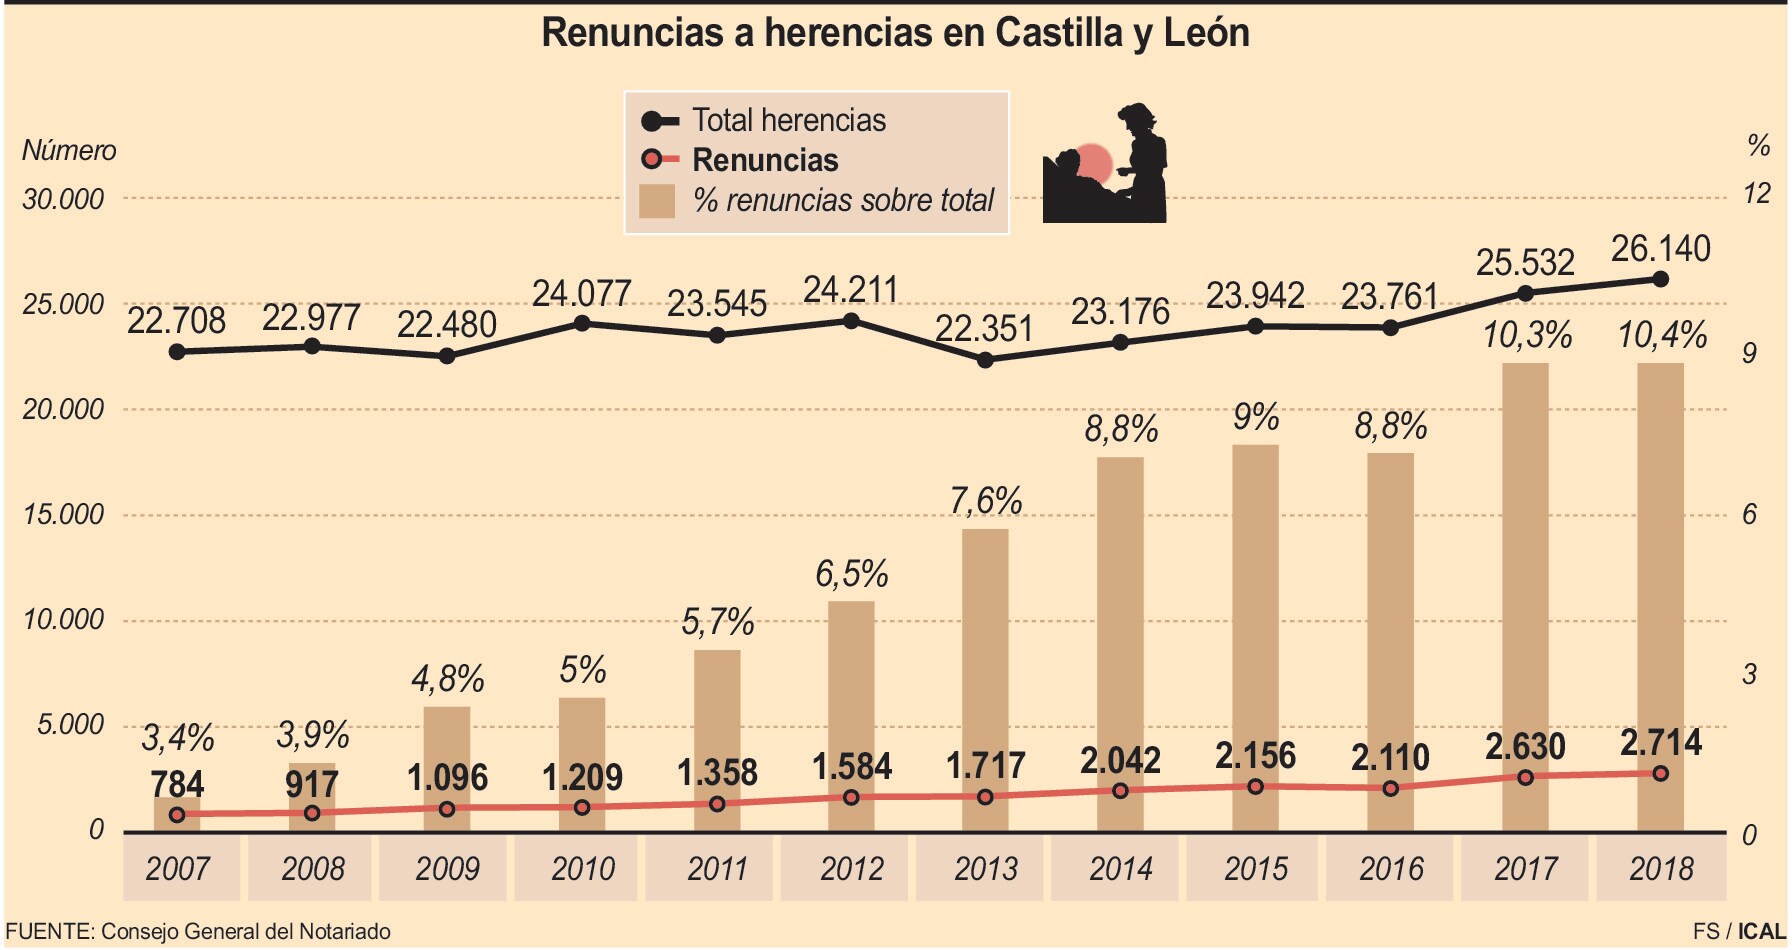 Renuncias a herencias en Castilla y León